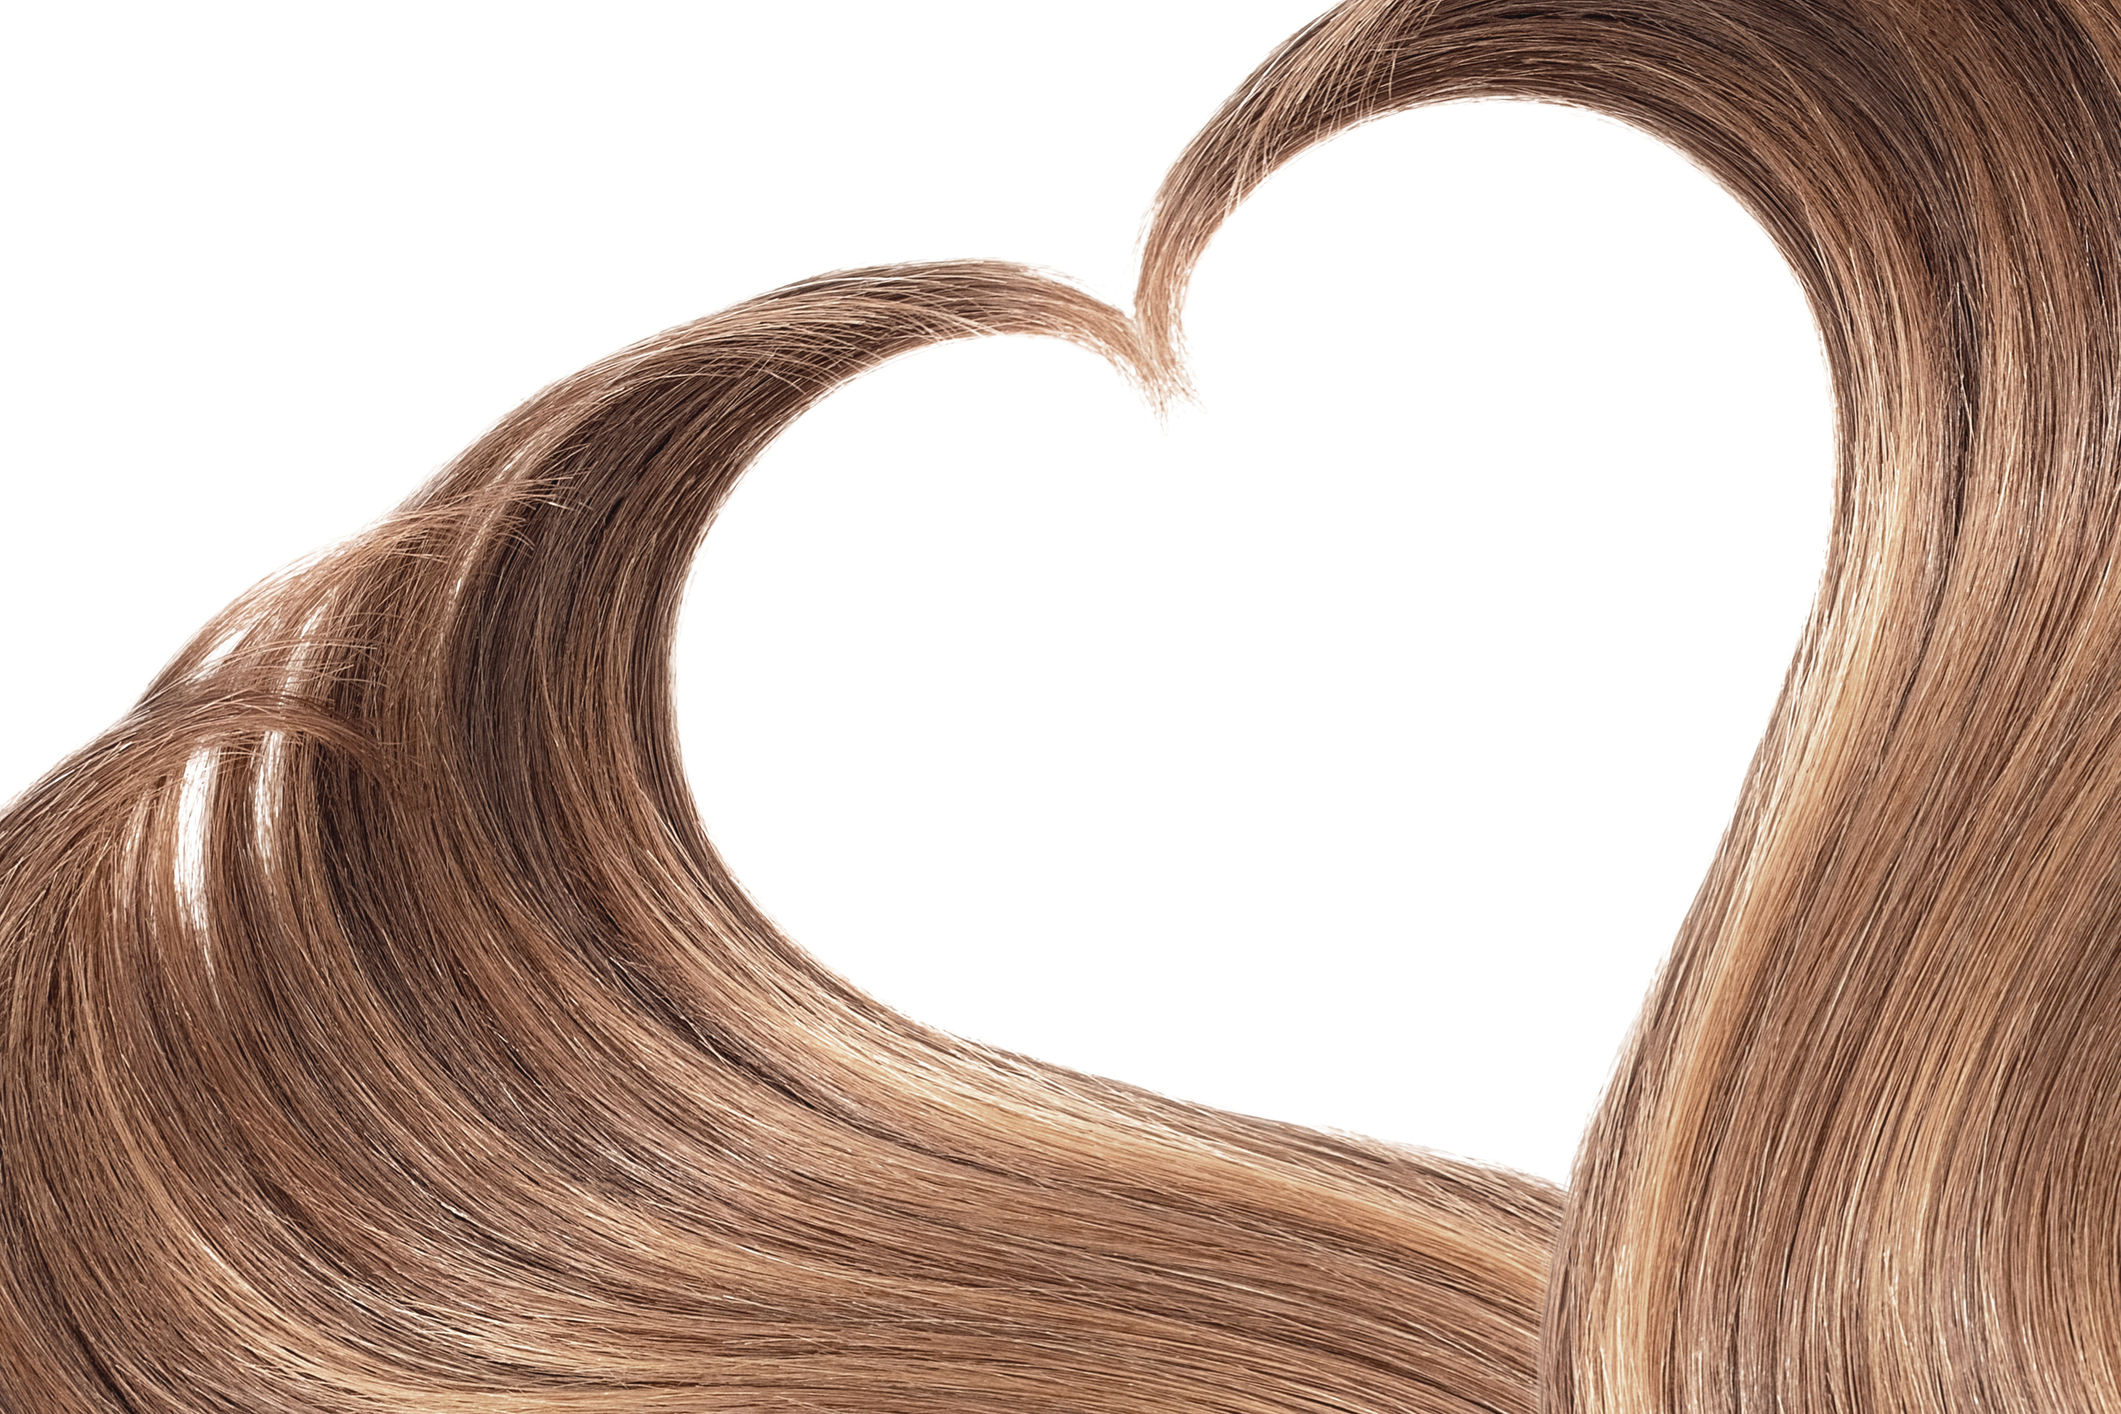 Analyse minérale de cheveux - Métabolisme lent sous stress - Mineral Balancing